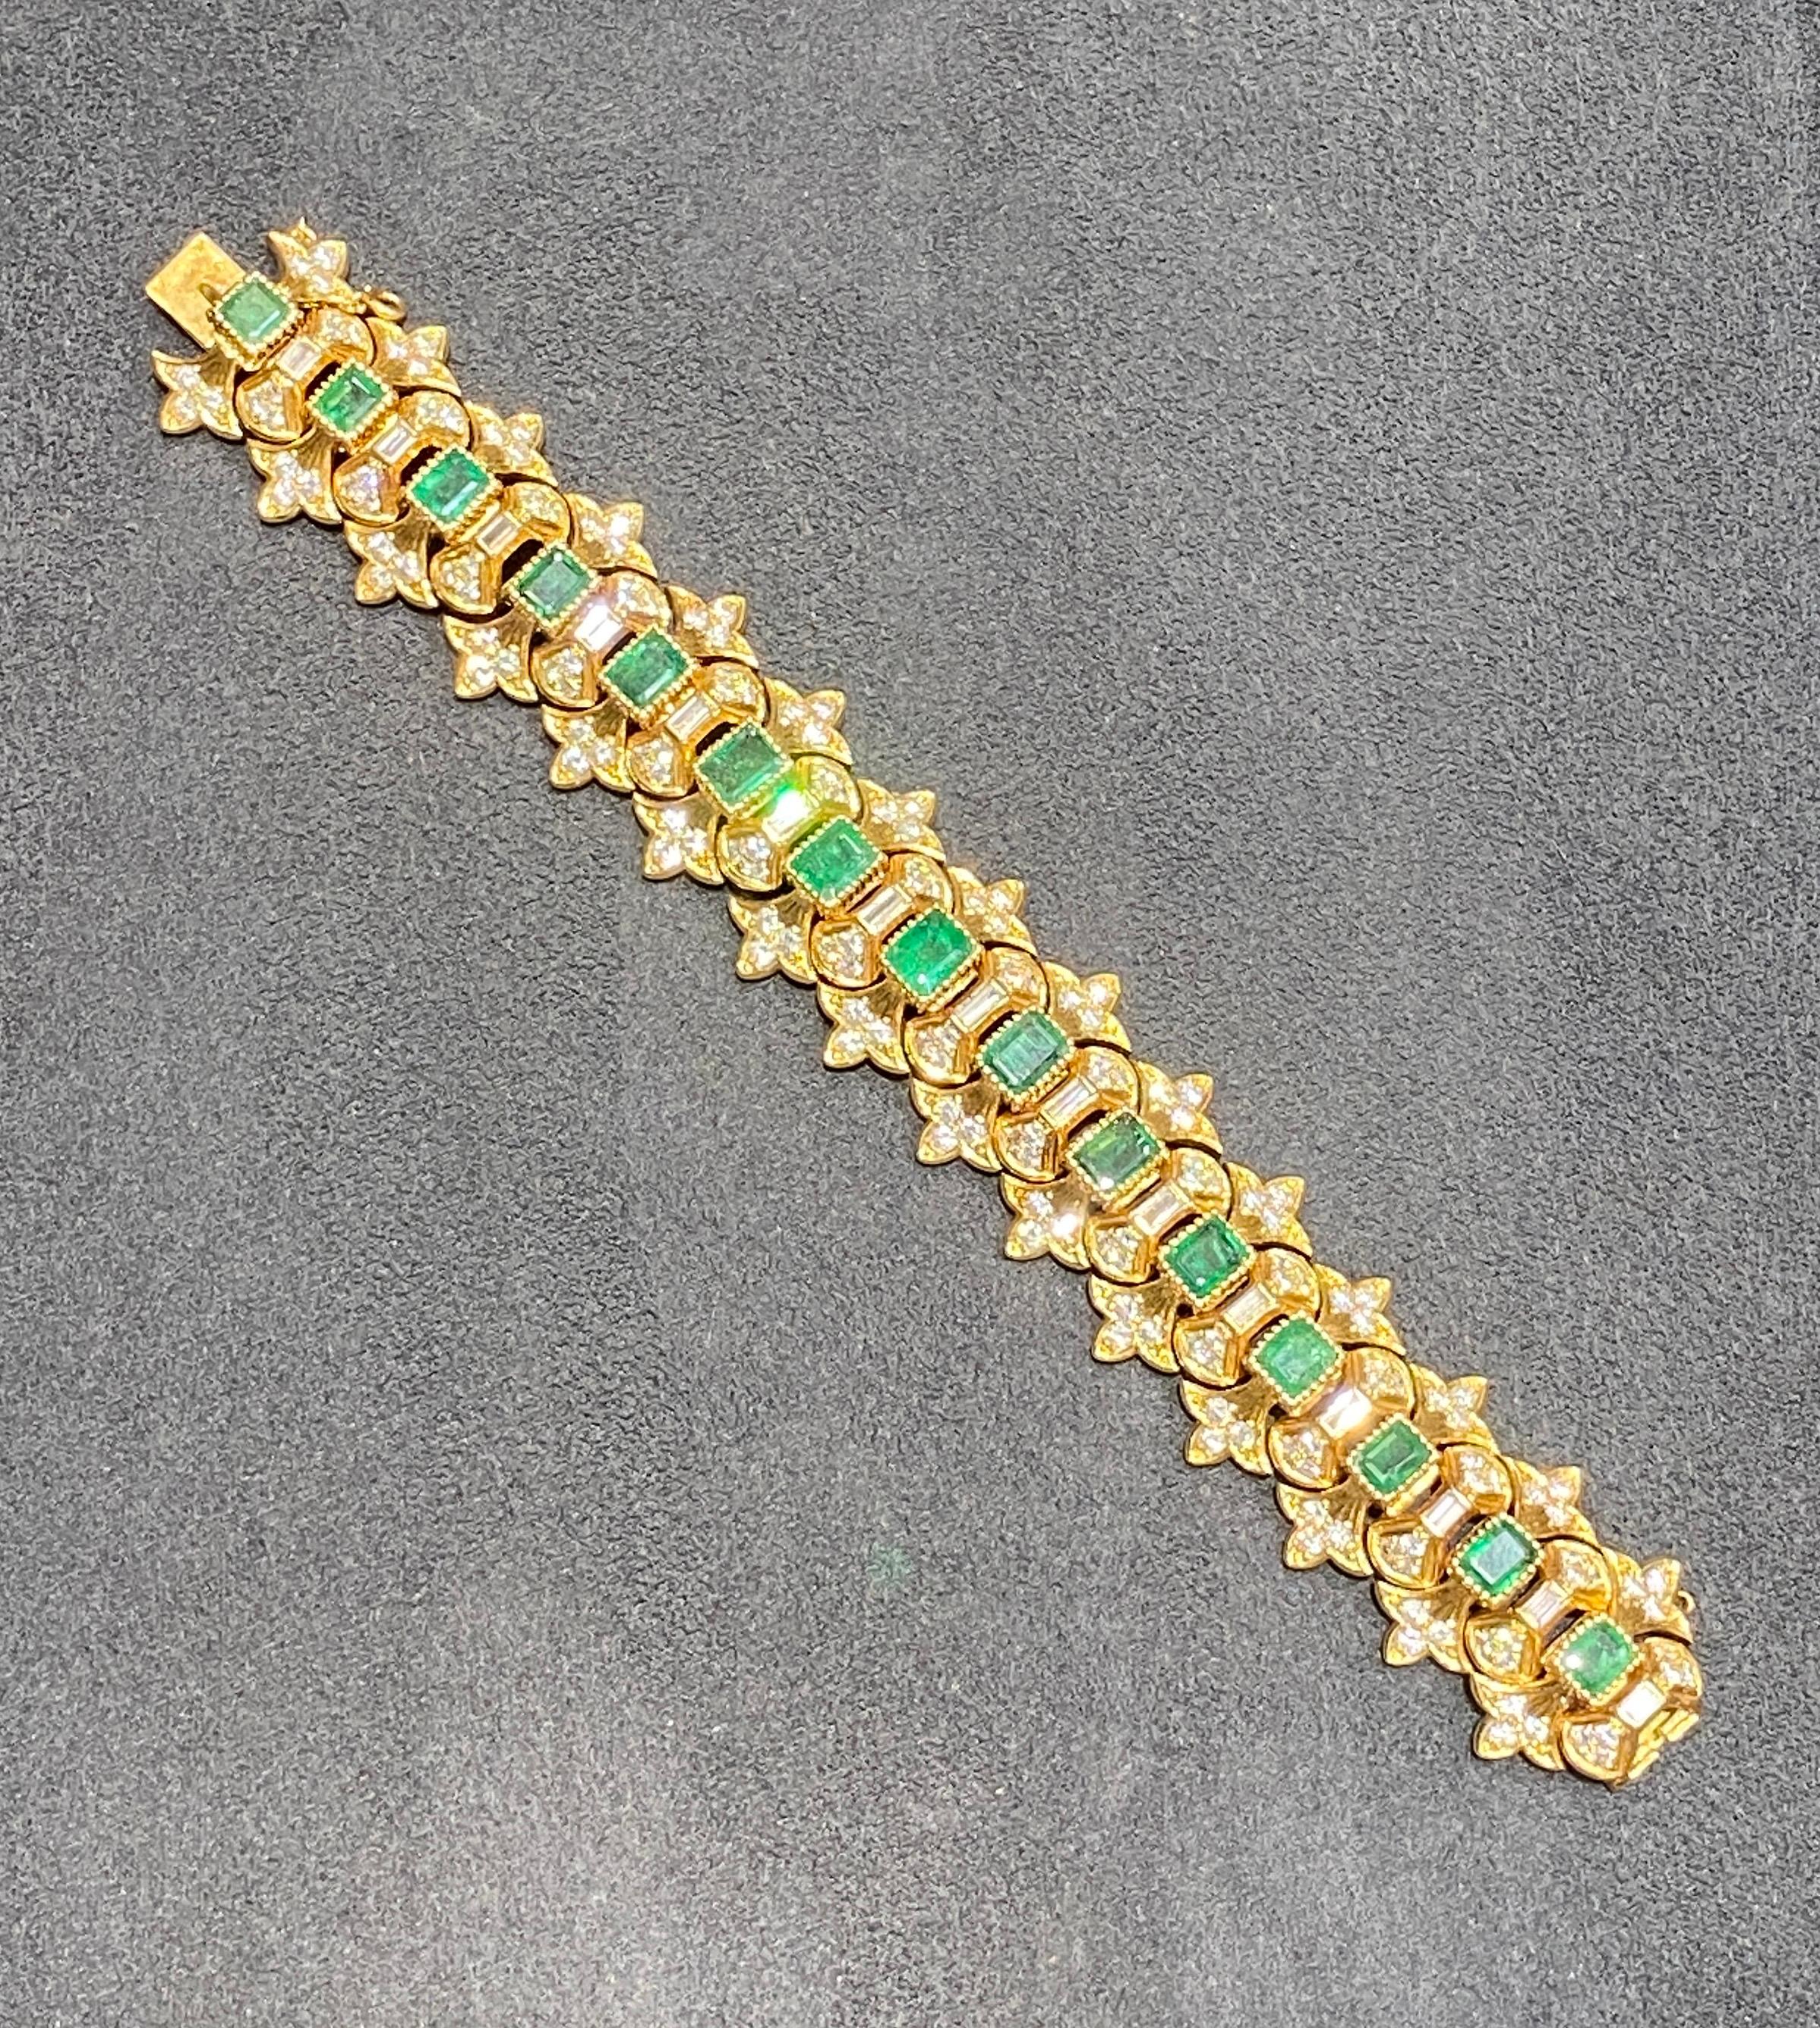 Ce remarquable bracelet Buccellati est composé d'or 18 carats, de diamants et d'émeraudes. Le motif est centré sur 15 émeraudes colombiennes taillées en émeraude qui totalisent environ 16 carats. Les émeraudes sont ornées d'environ 12 carats de